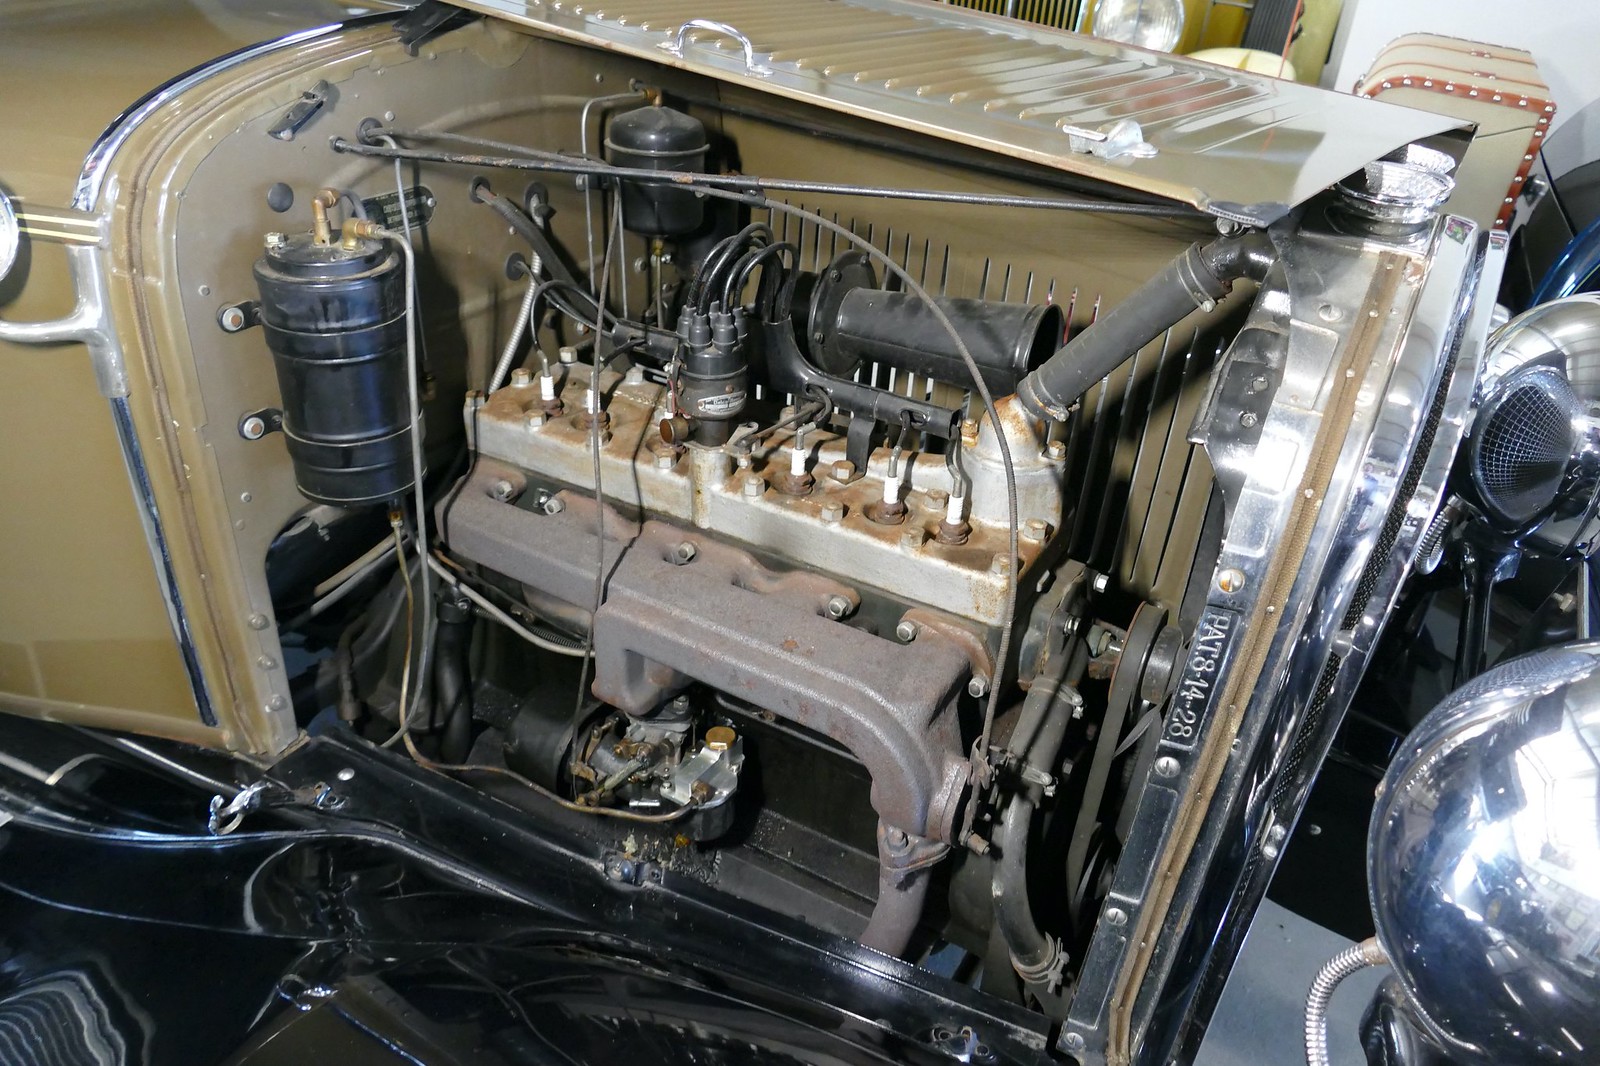 Chrysler 65 4 Door Sedan 1929